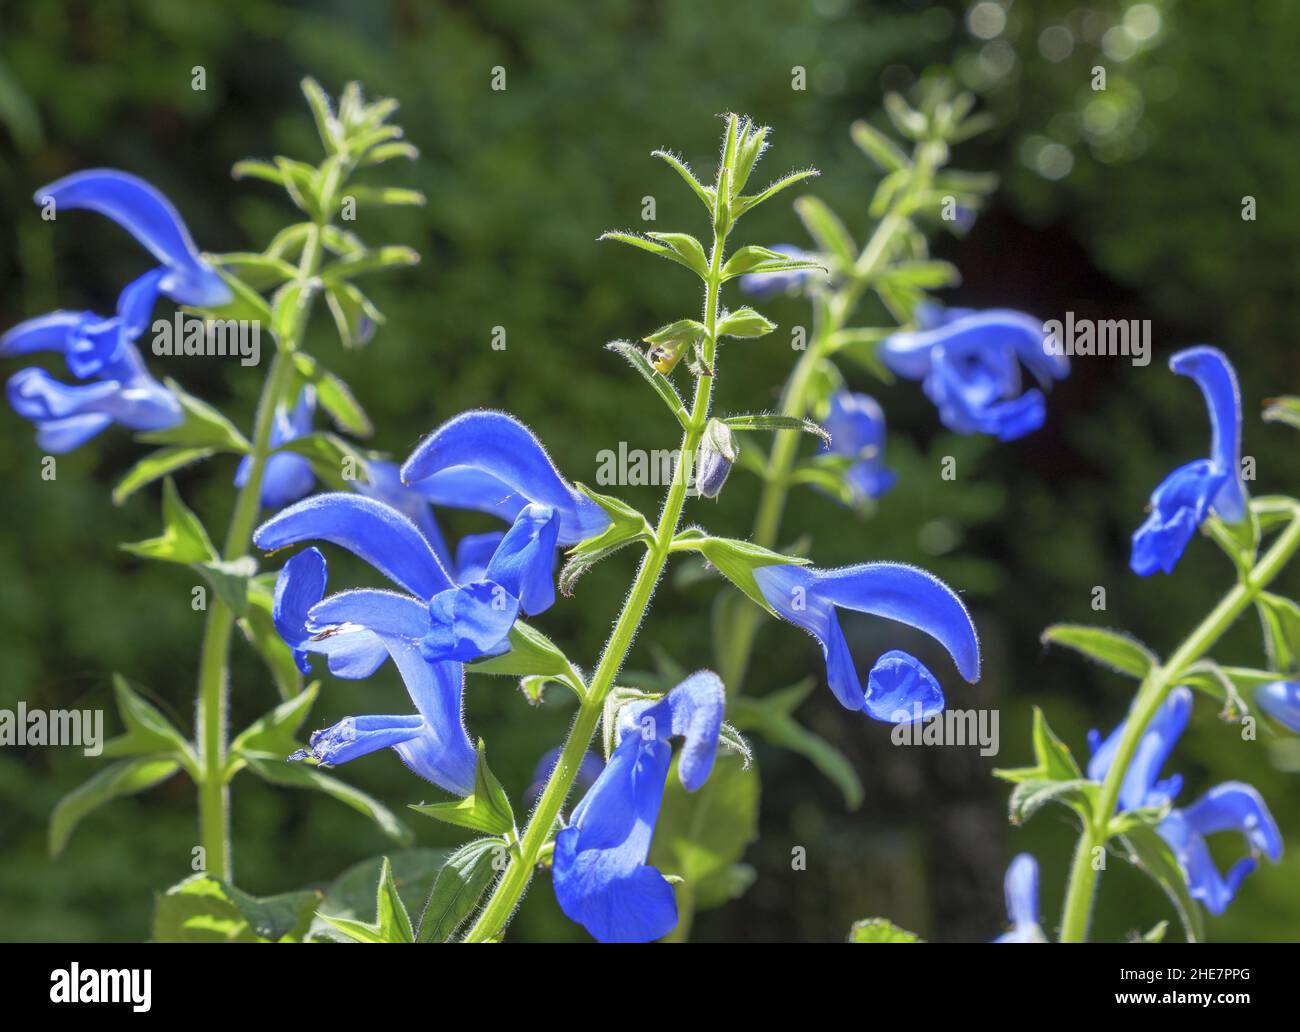 Blue sage, Salvia patens Stock Photo